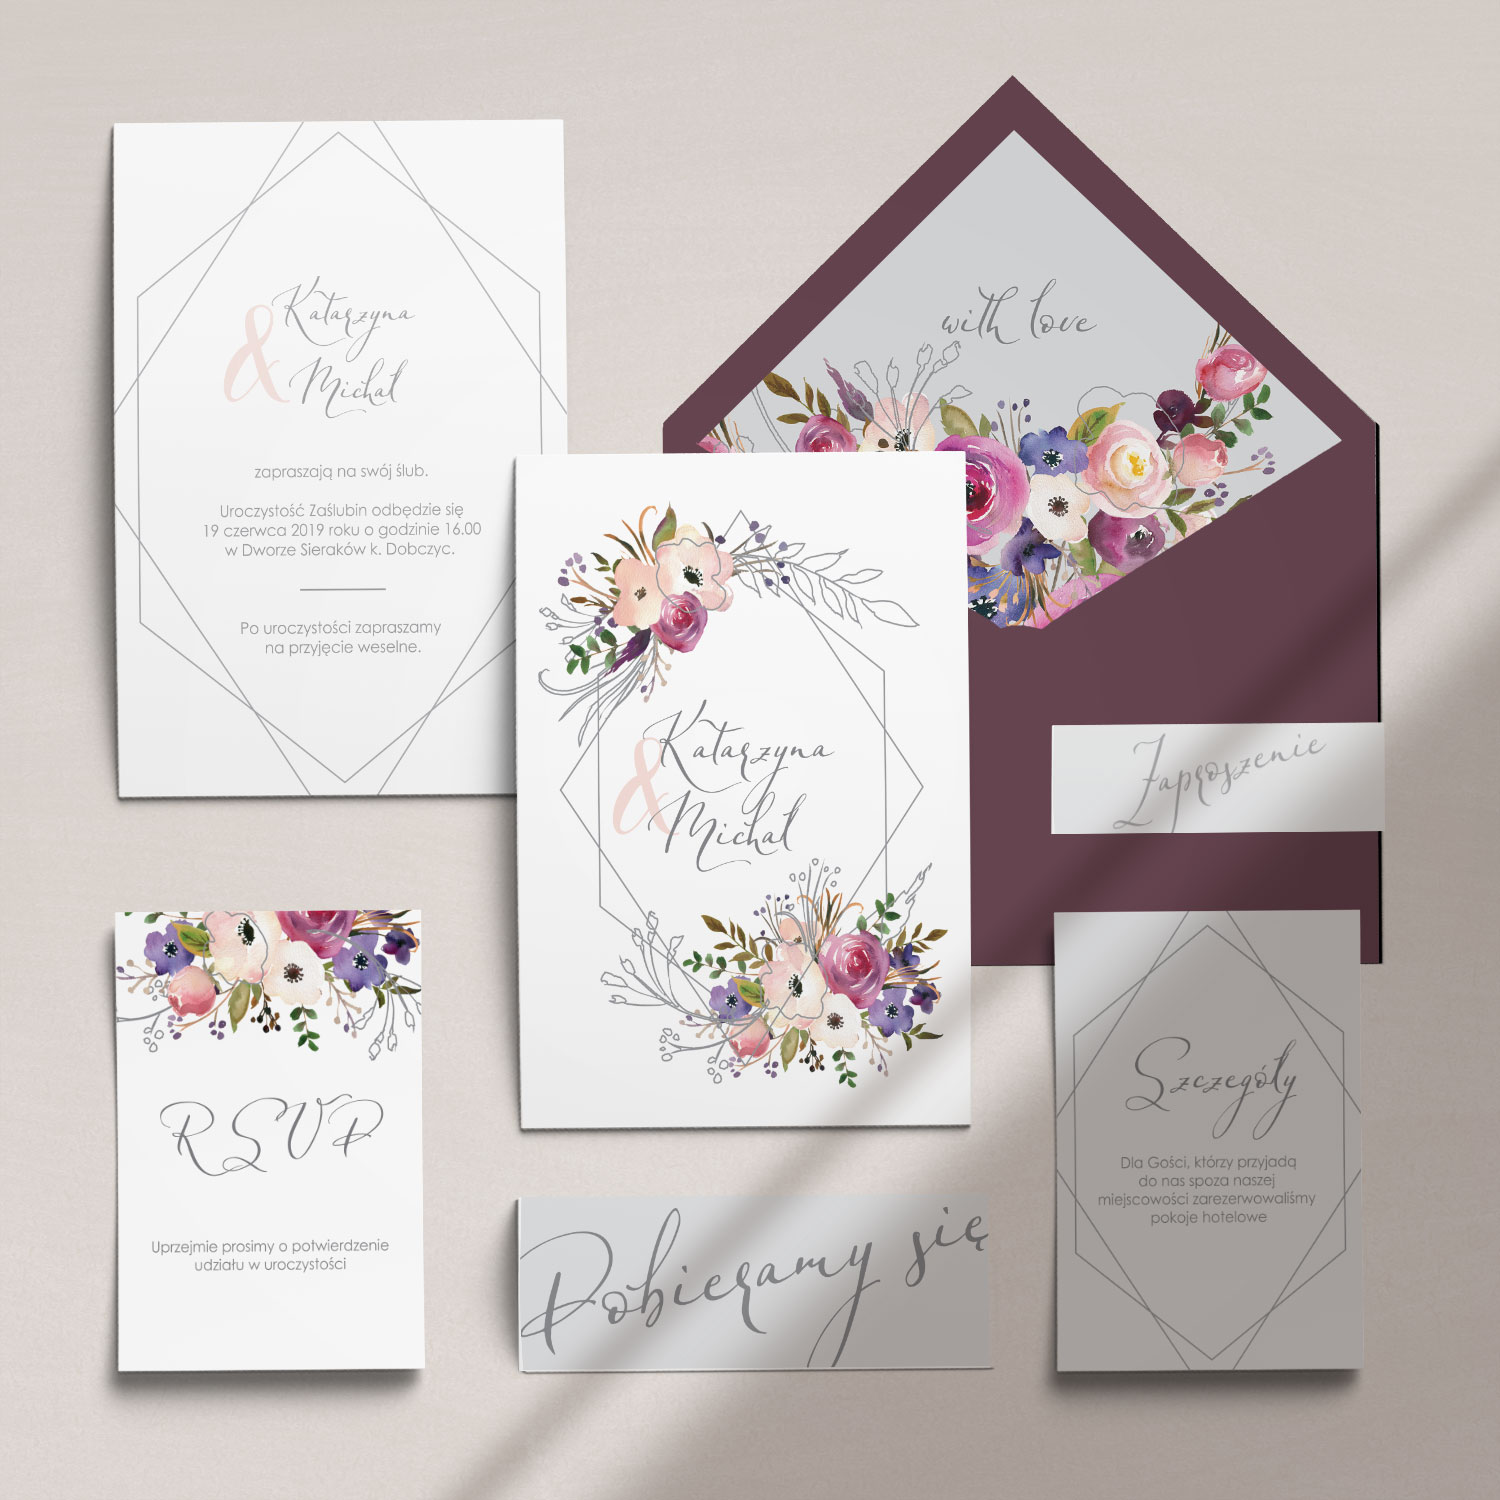 Botaniczne zaproszenia ślubne z kwiatami wraz z kopertą, RCVP oraz opaską z kolekcji Kreska i kwiaty firmy Cartolina - zaproszenia ślubne